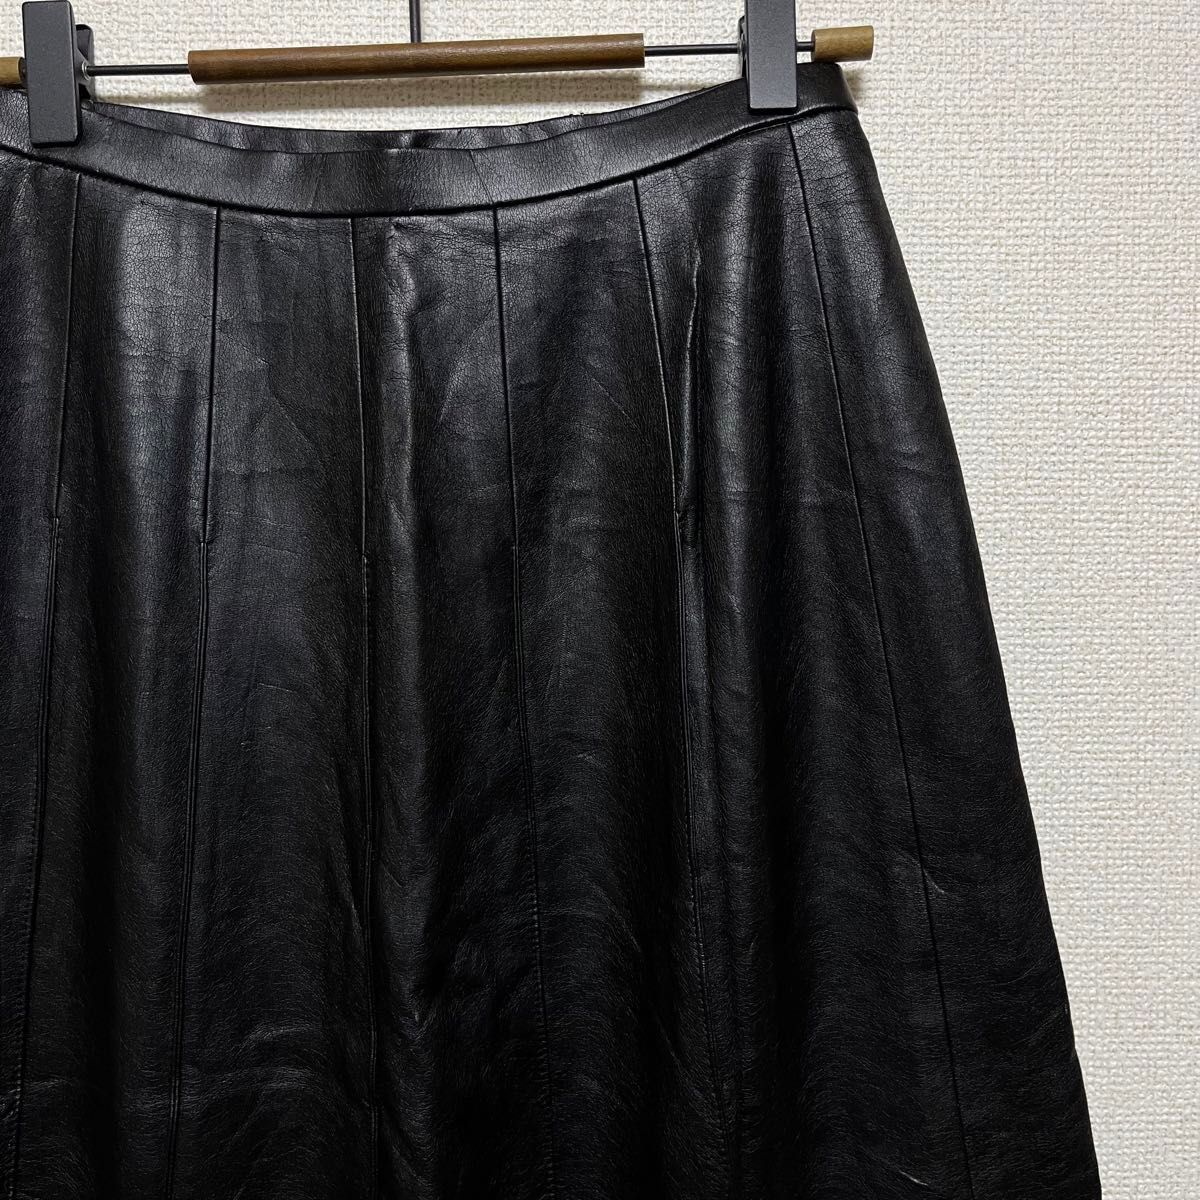 Fontana Grande レザースカート ロングスカート 黒 古着 ブラック ロング